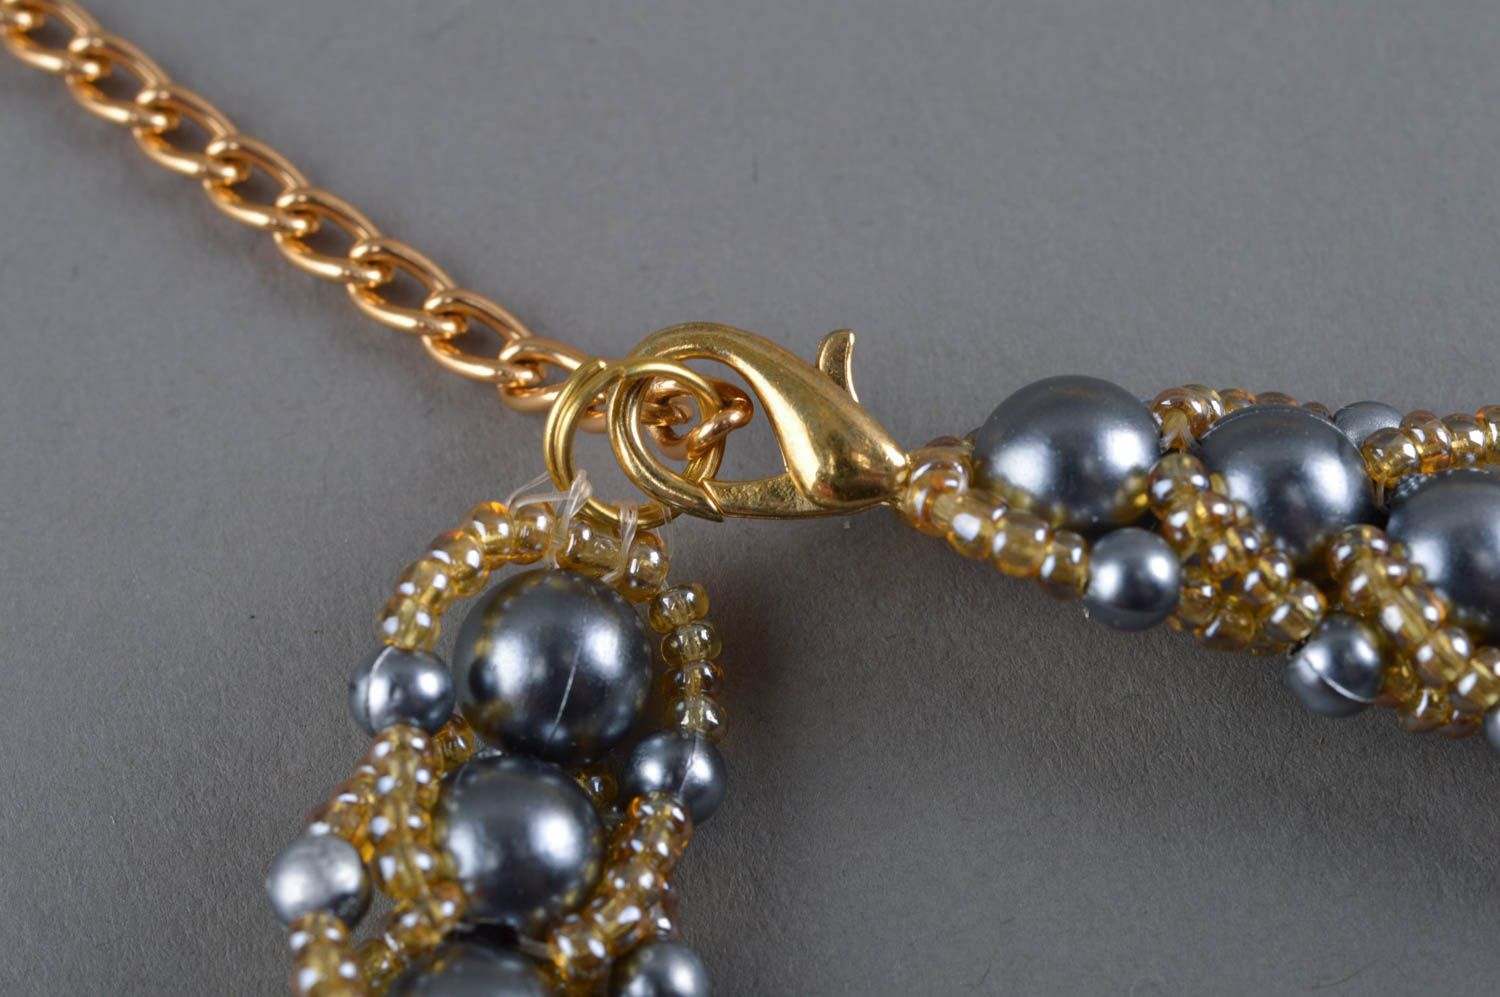 Ожерелье из бисера и бусин плетеное ручной работы золото с серебром авторское фото 4